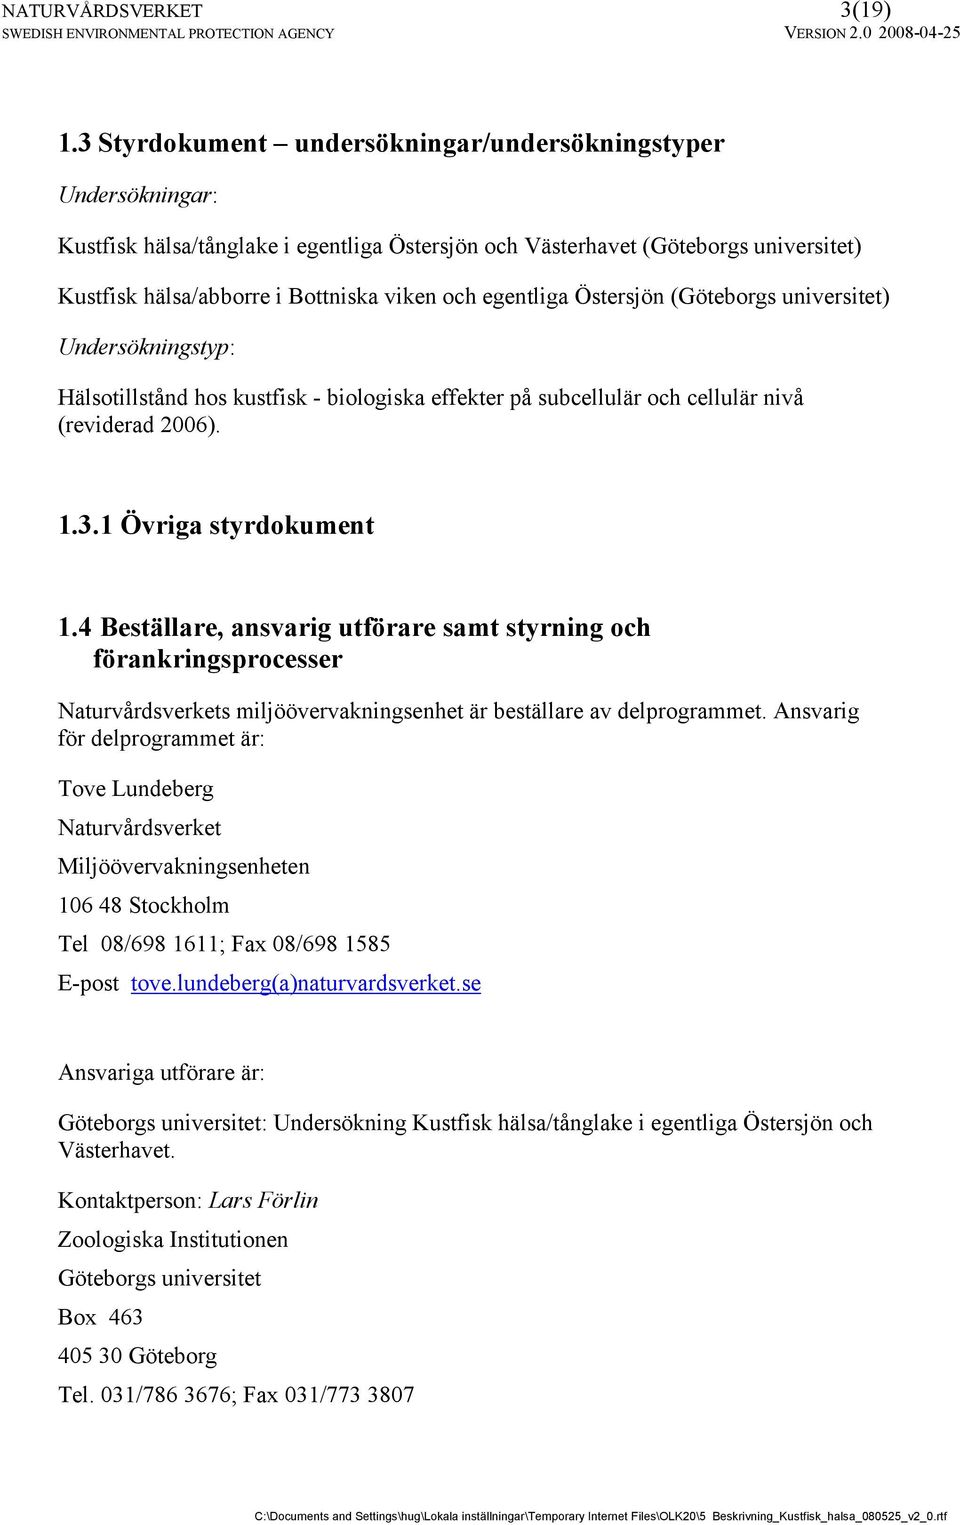 egentliga Östersjön (Göteborgs universitet) Undersökningstyp: Hälsotillstånd hos kustfisk - biologiska effekter på subcellulär och cellulär nivå (reviderad 2006). 1.3.1 Övriga styrdokument 1.